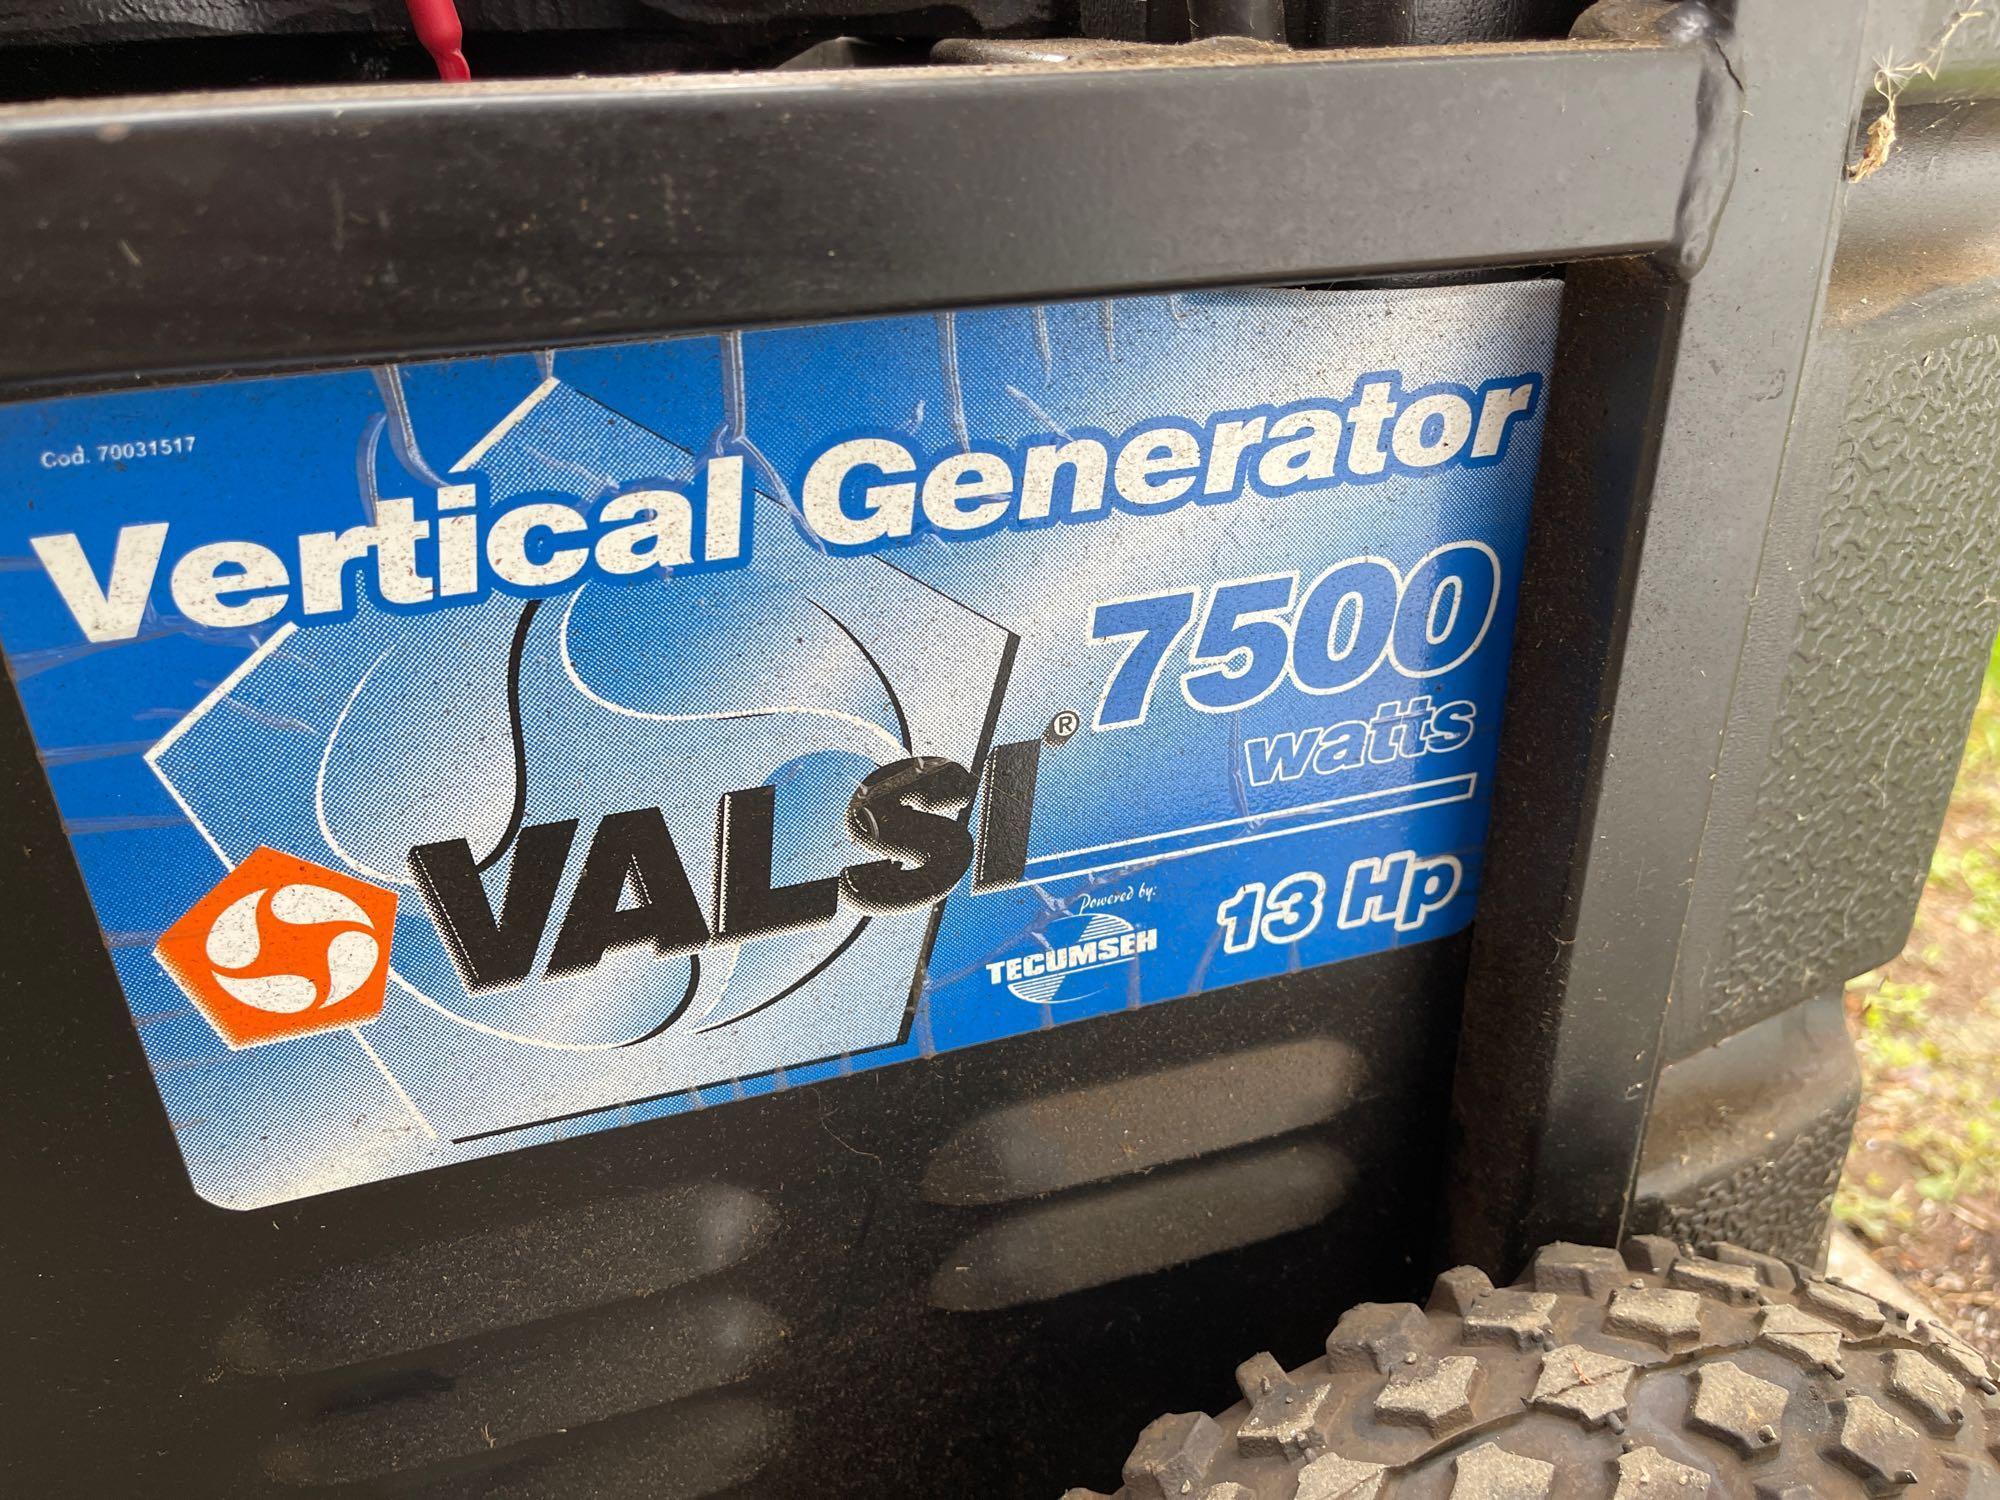 Valsi 7500 watt gas generator